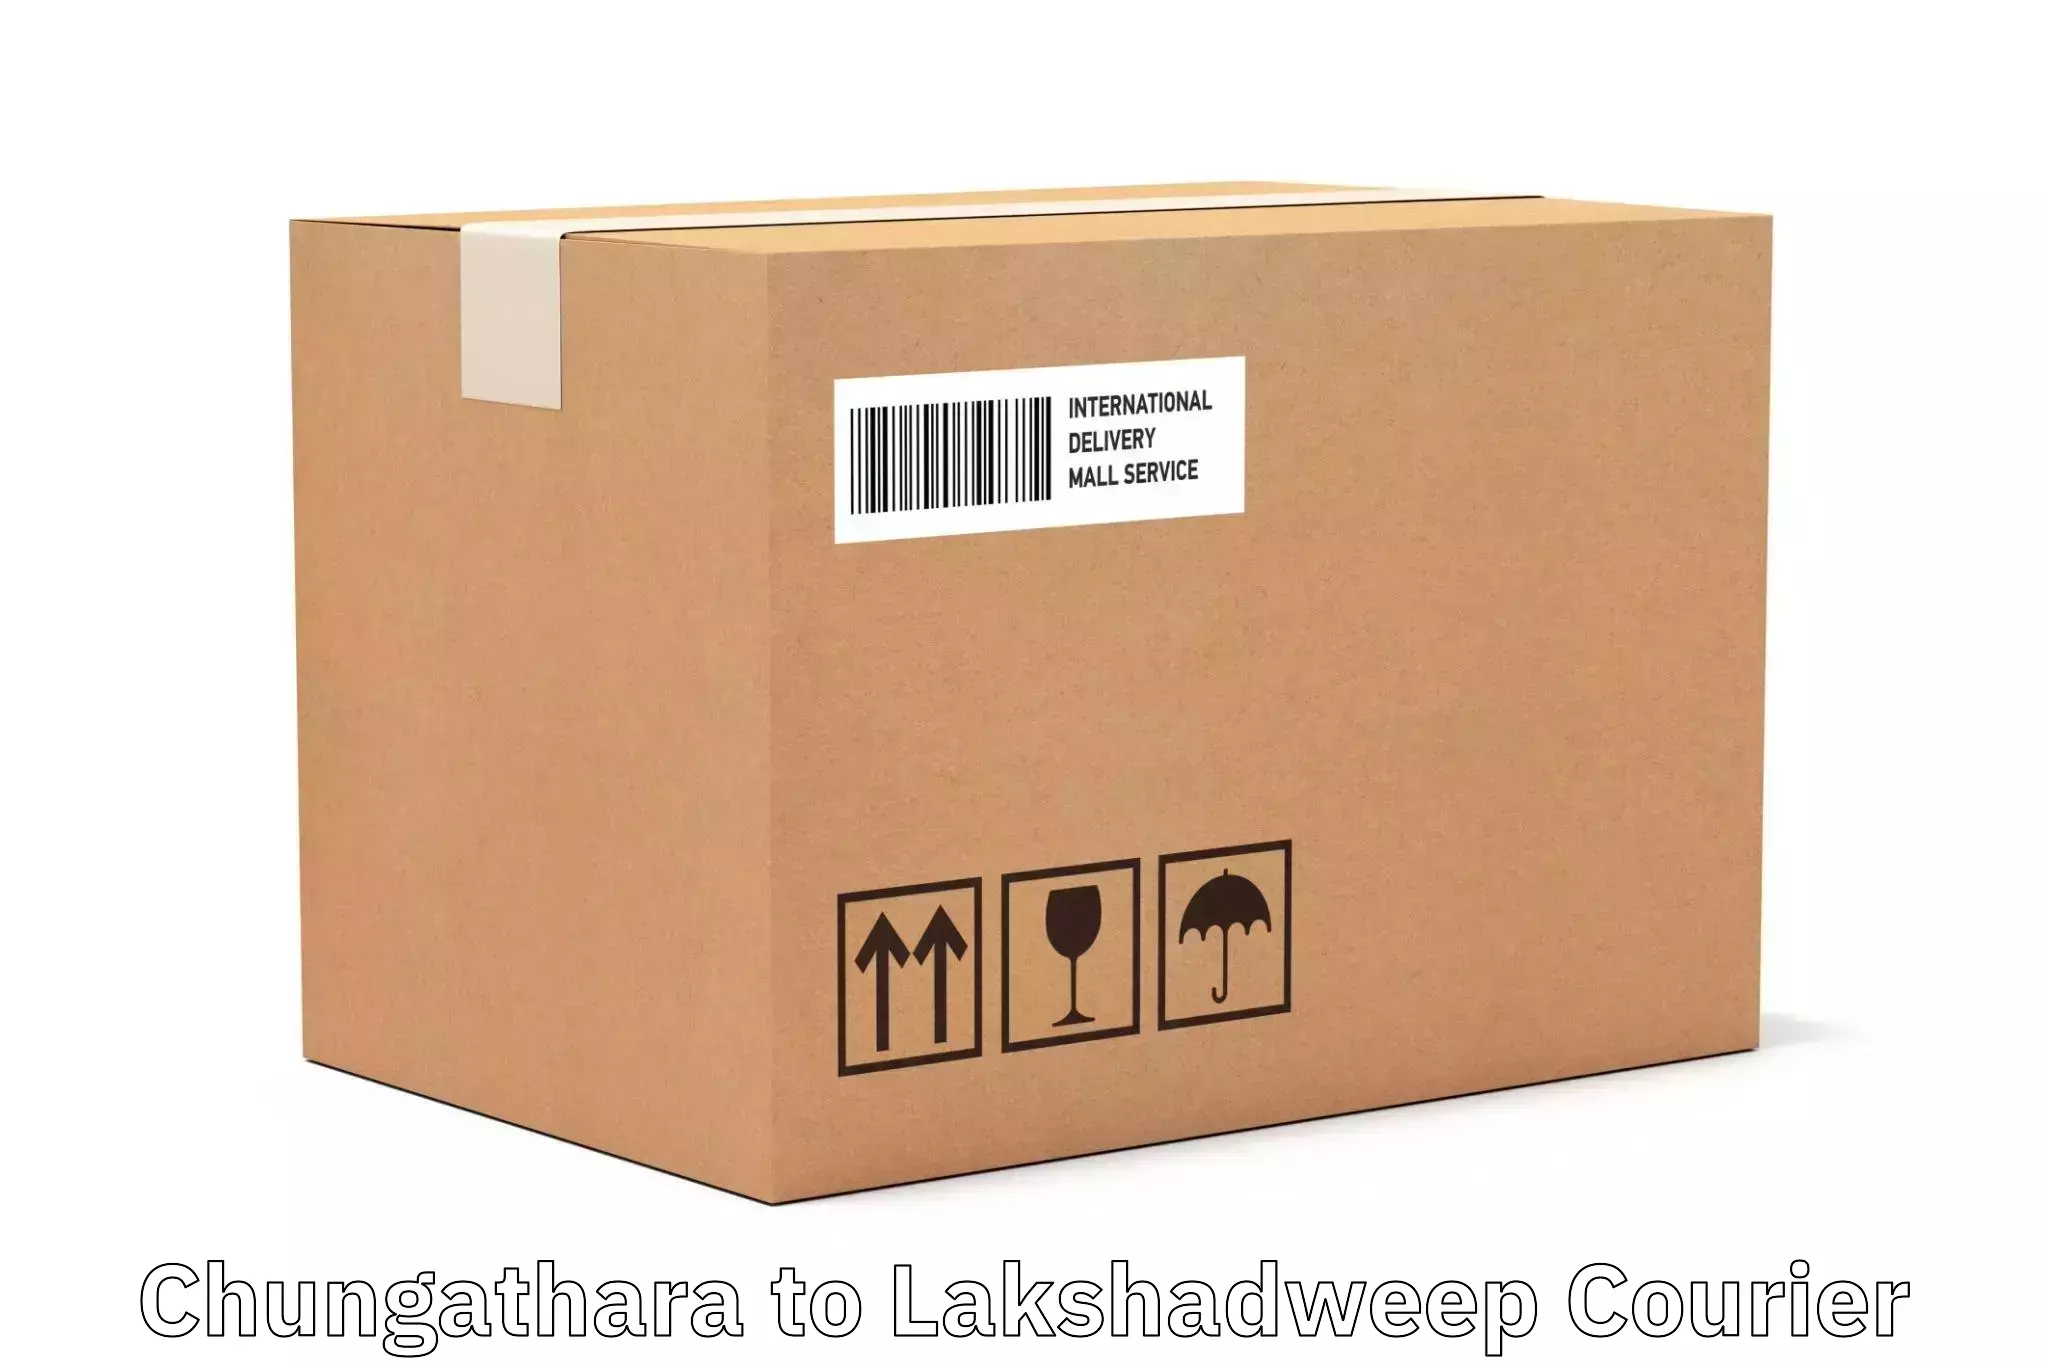 Fast shipping solutions Chungathara to Lakshadweep